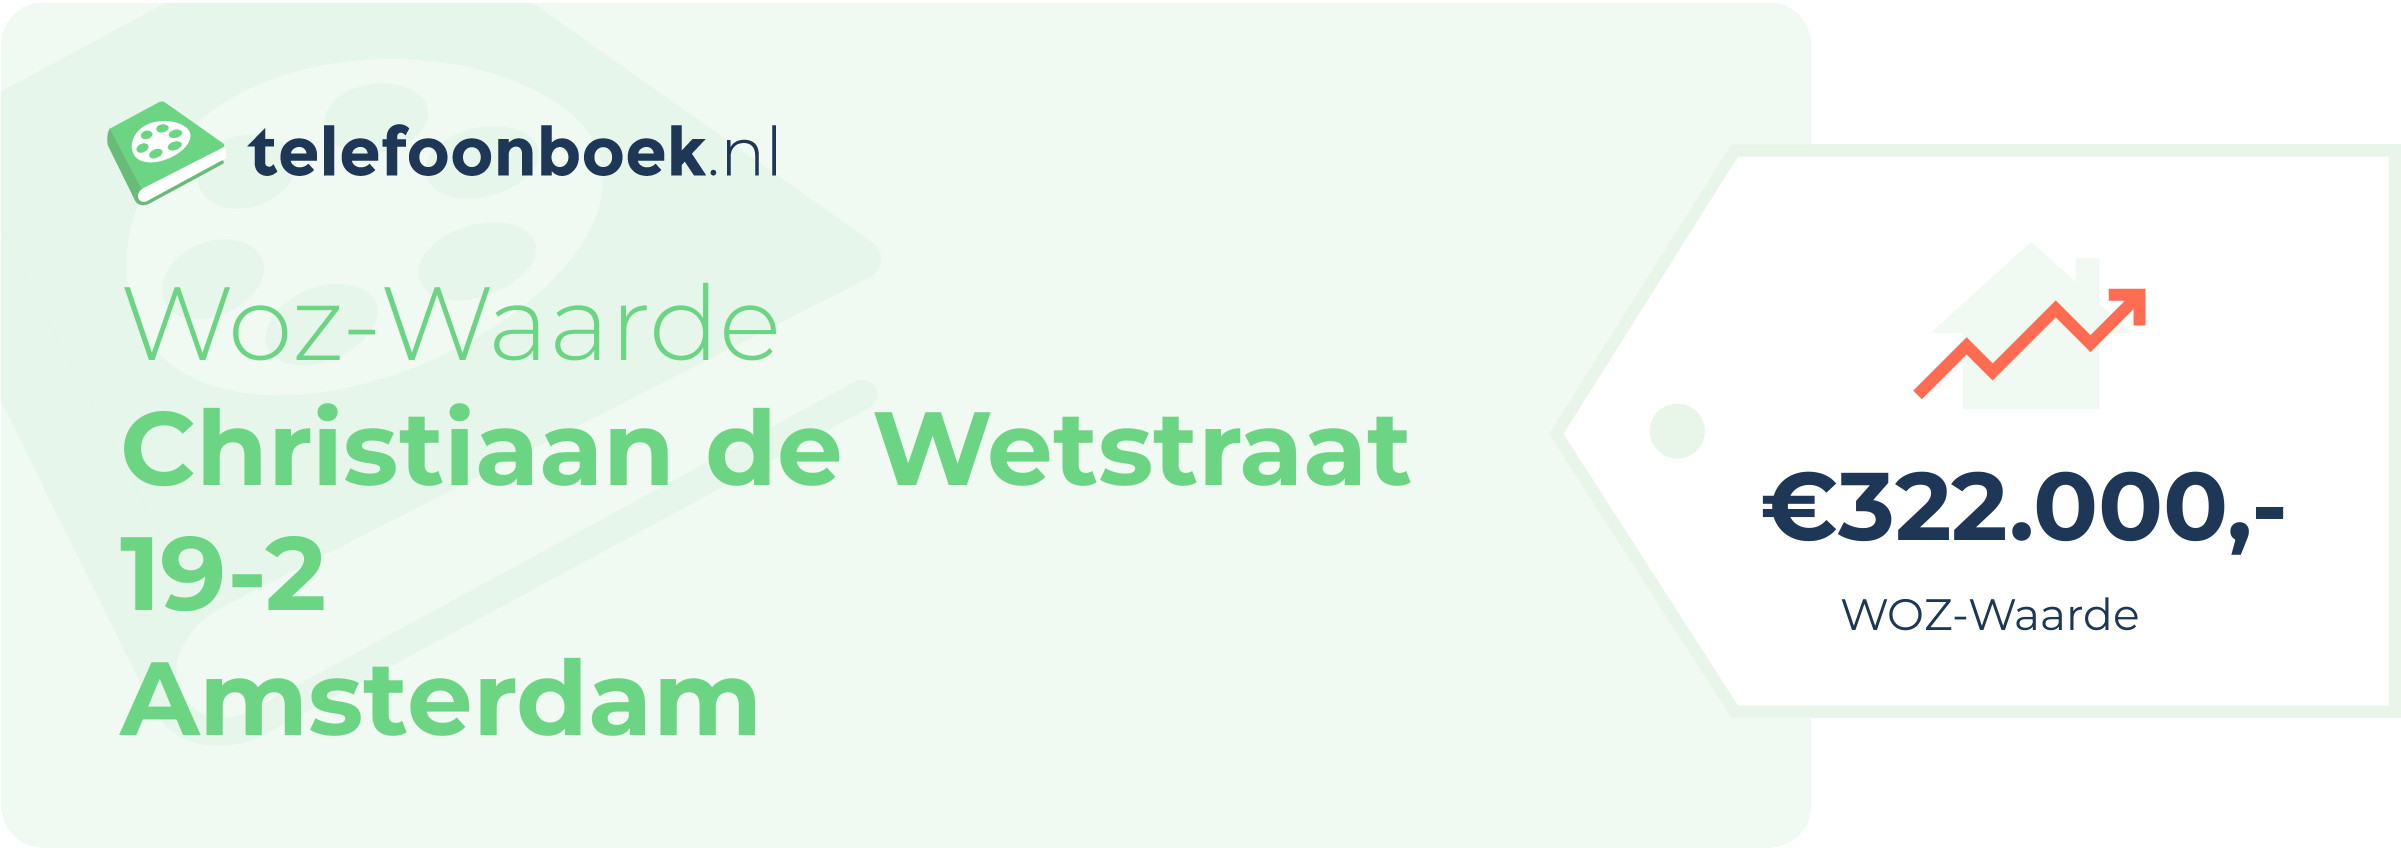 WOZ-waarde Christiaan De Wetstraat 19-2 Amsterdam